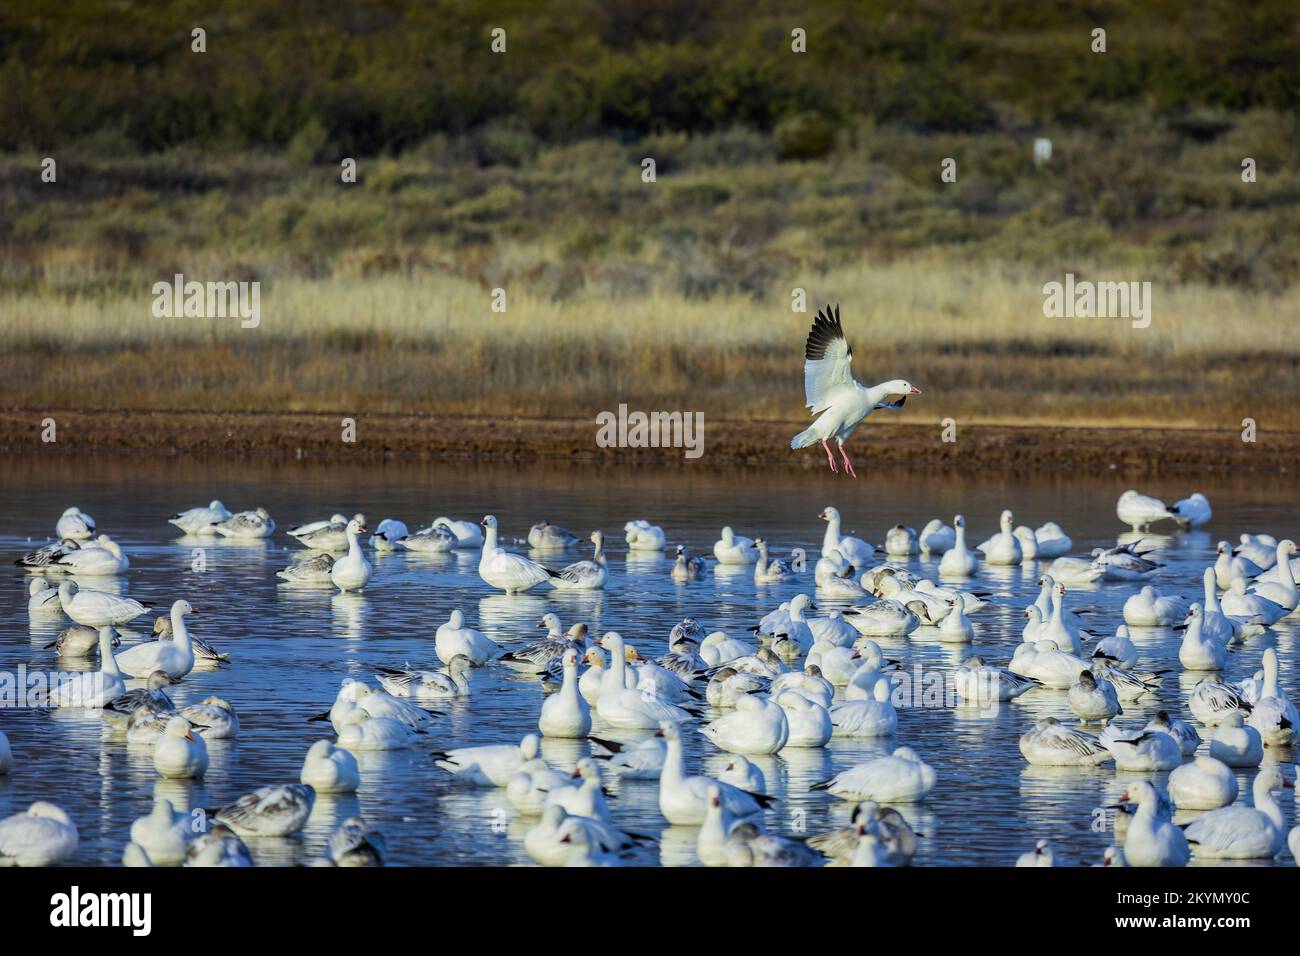 Canada Goose Landing in gregge di oche su acqua Foto Stock